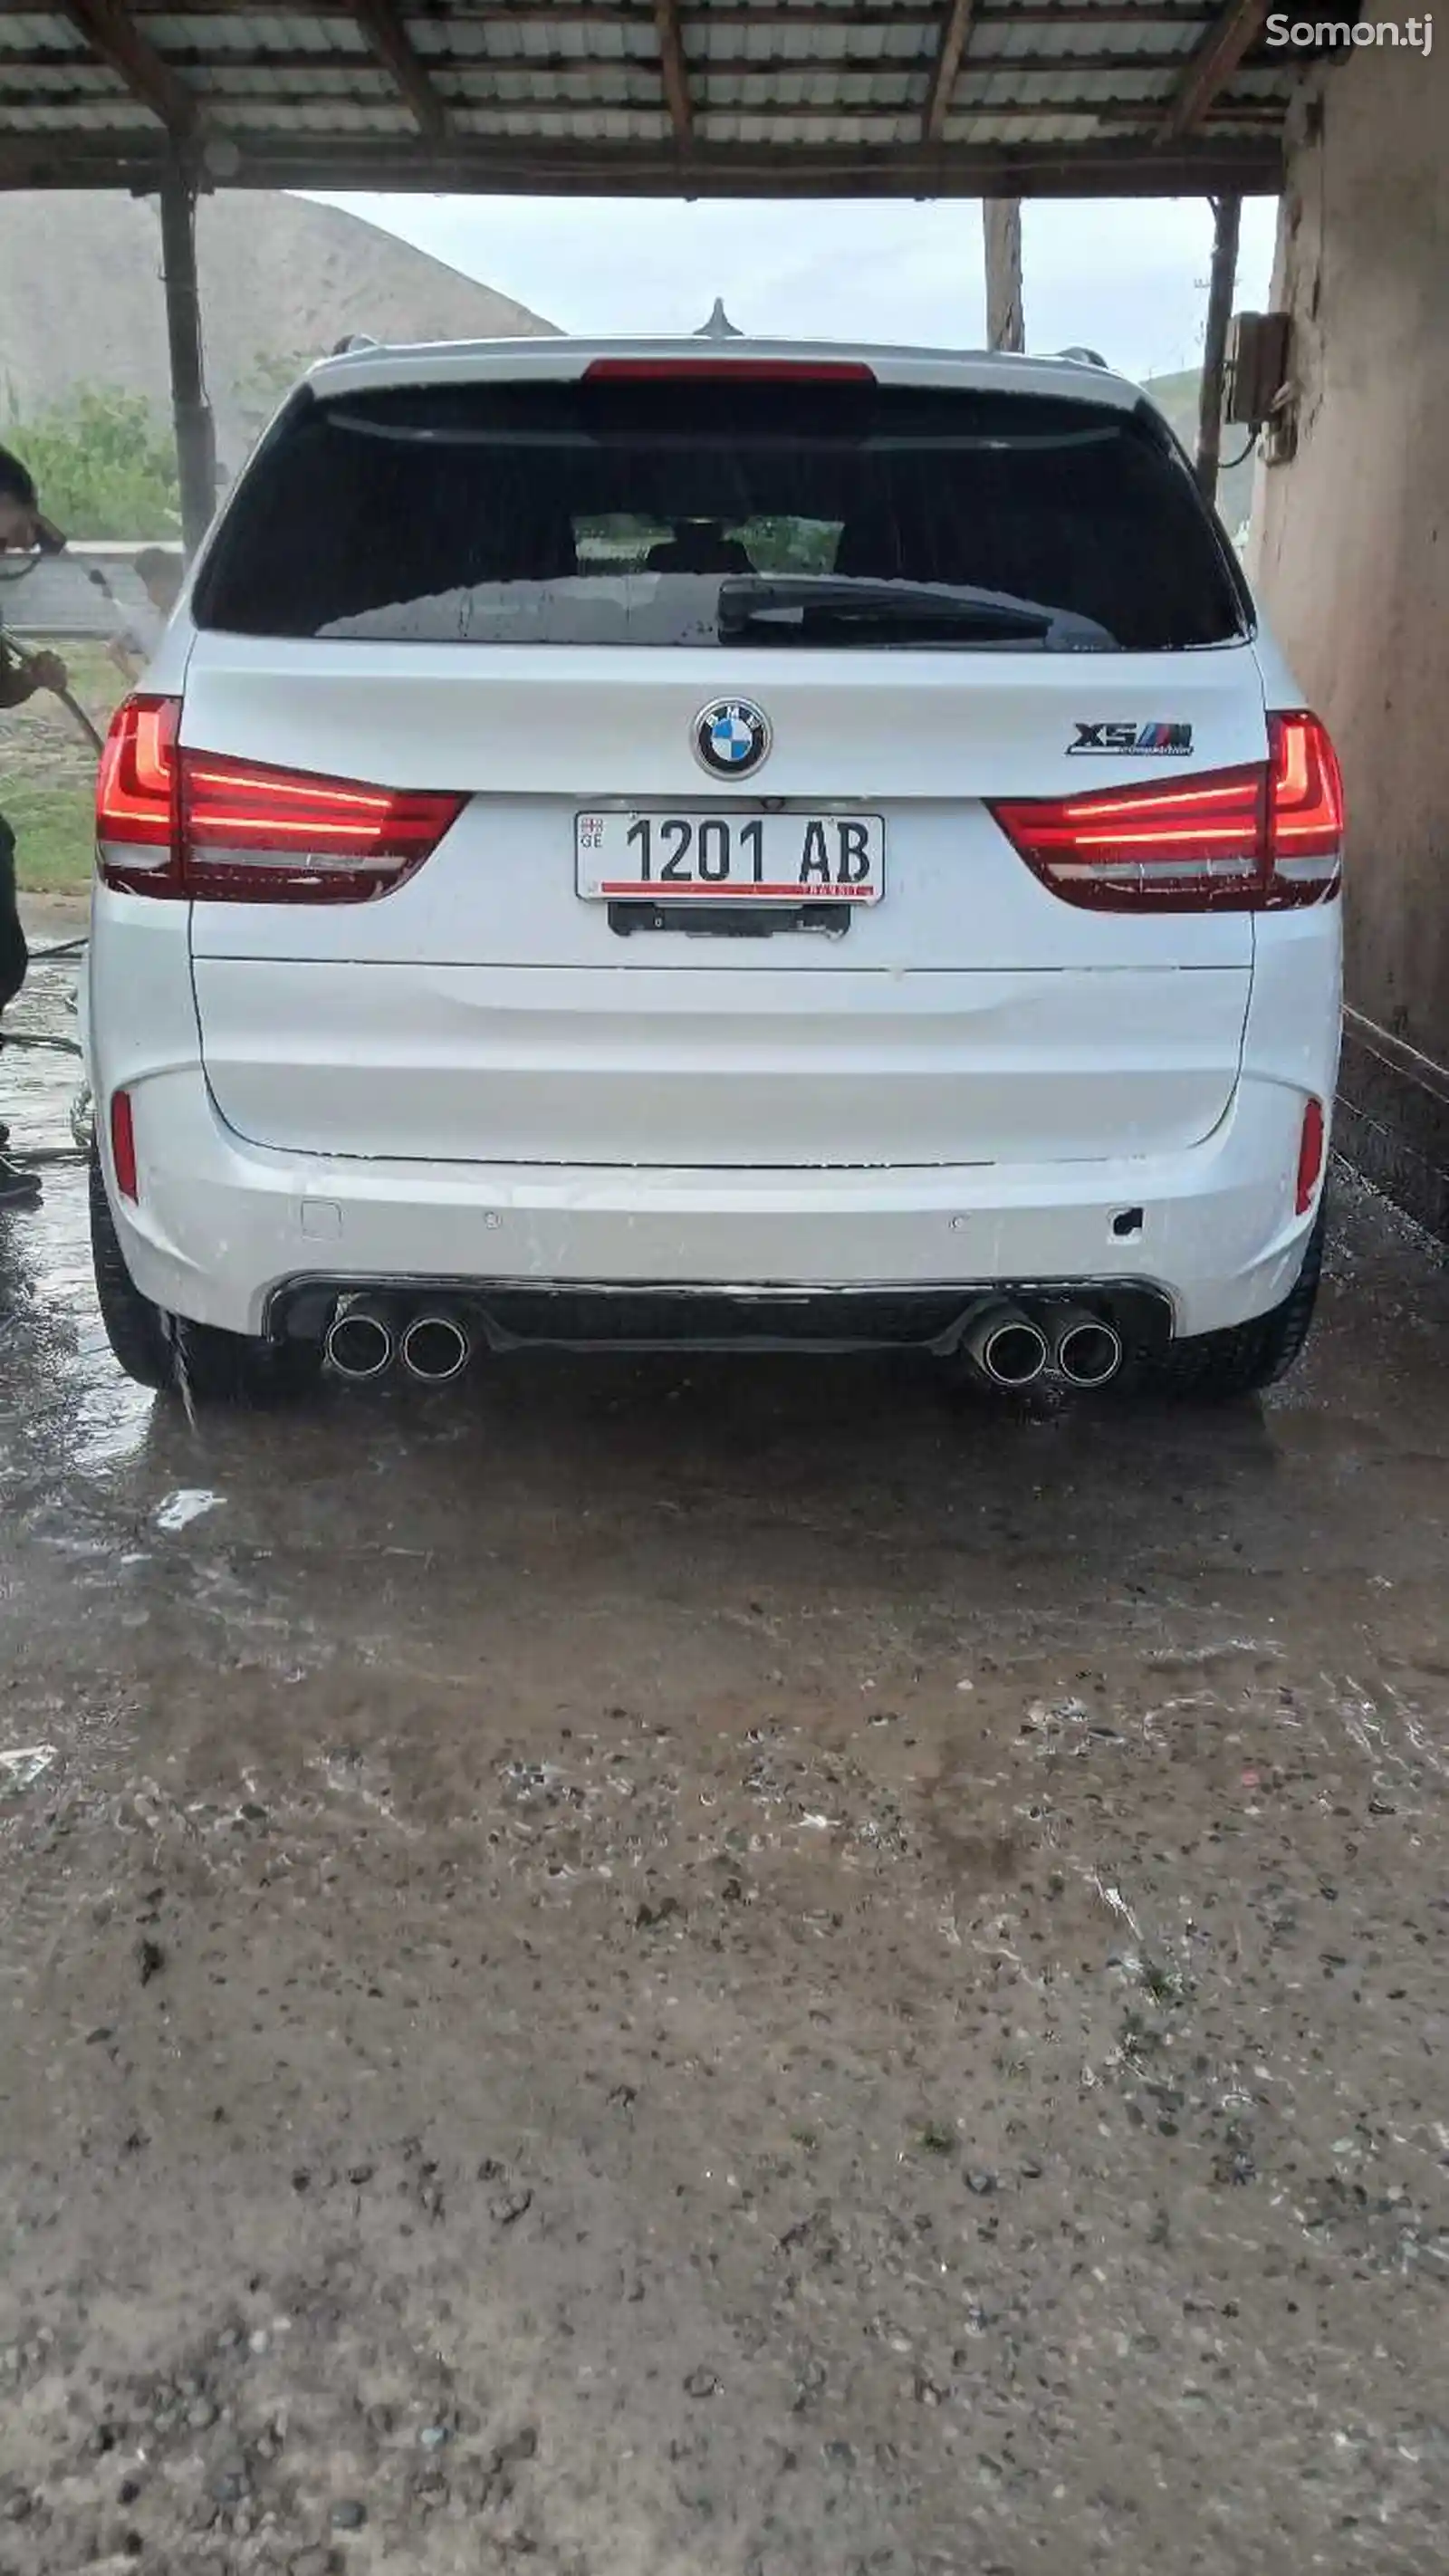 BMW X5, 2019-2